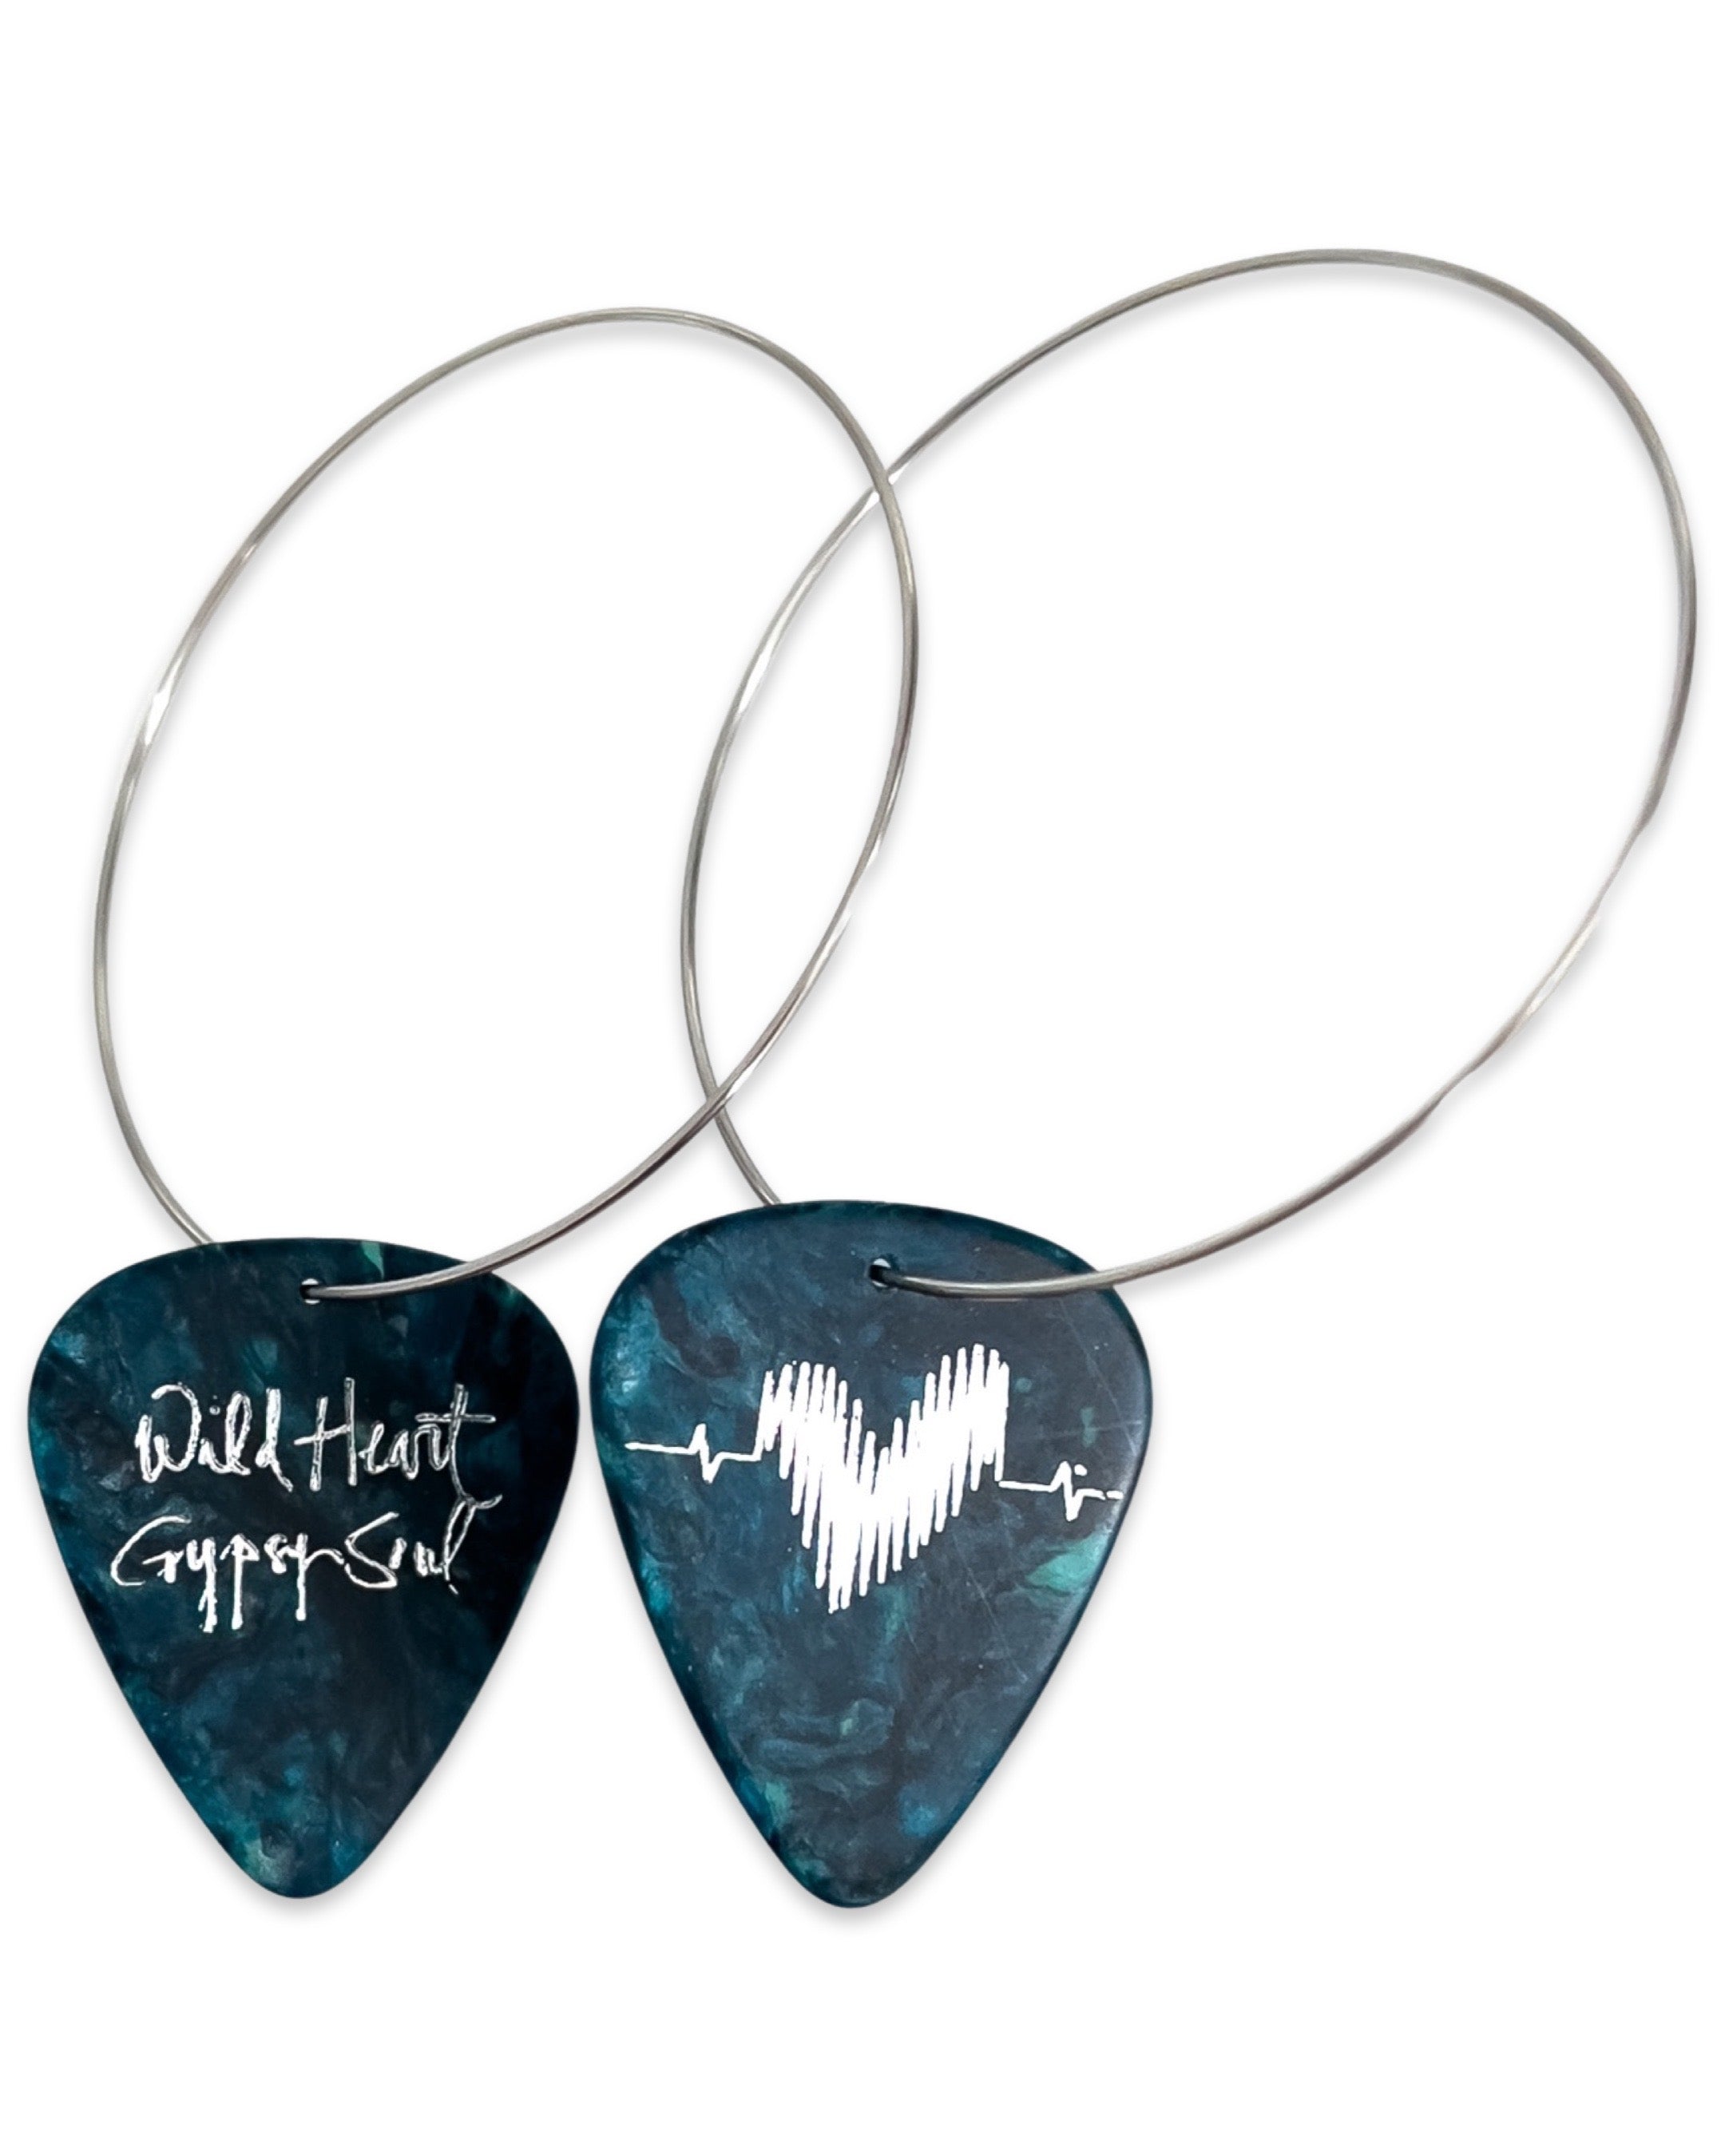 WS Wild Heart Gypsy Soul Turquoise Reversible Single Guitar Pick Earrings